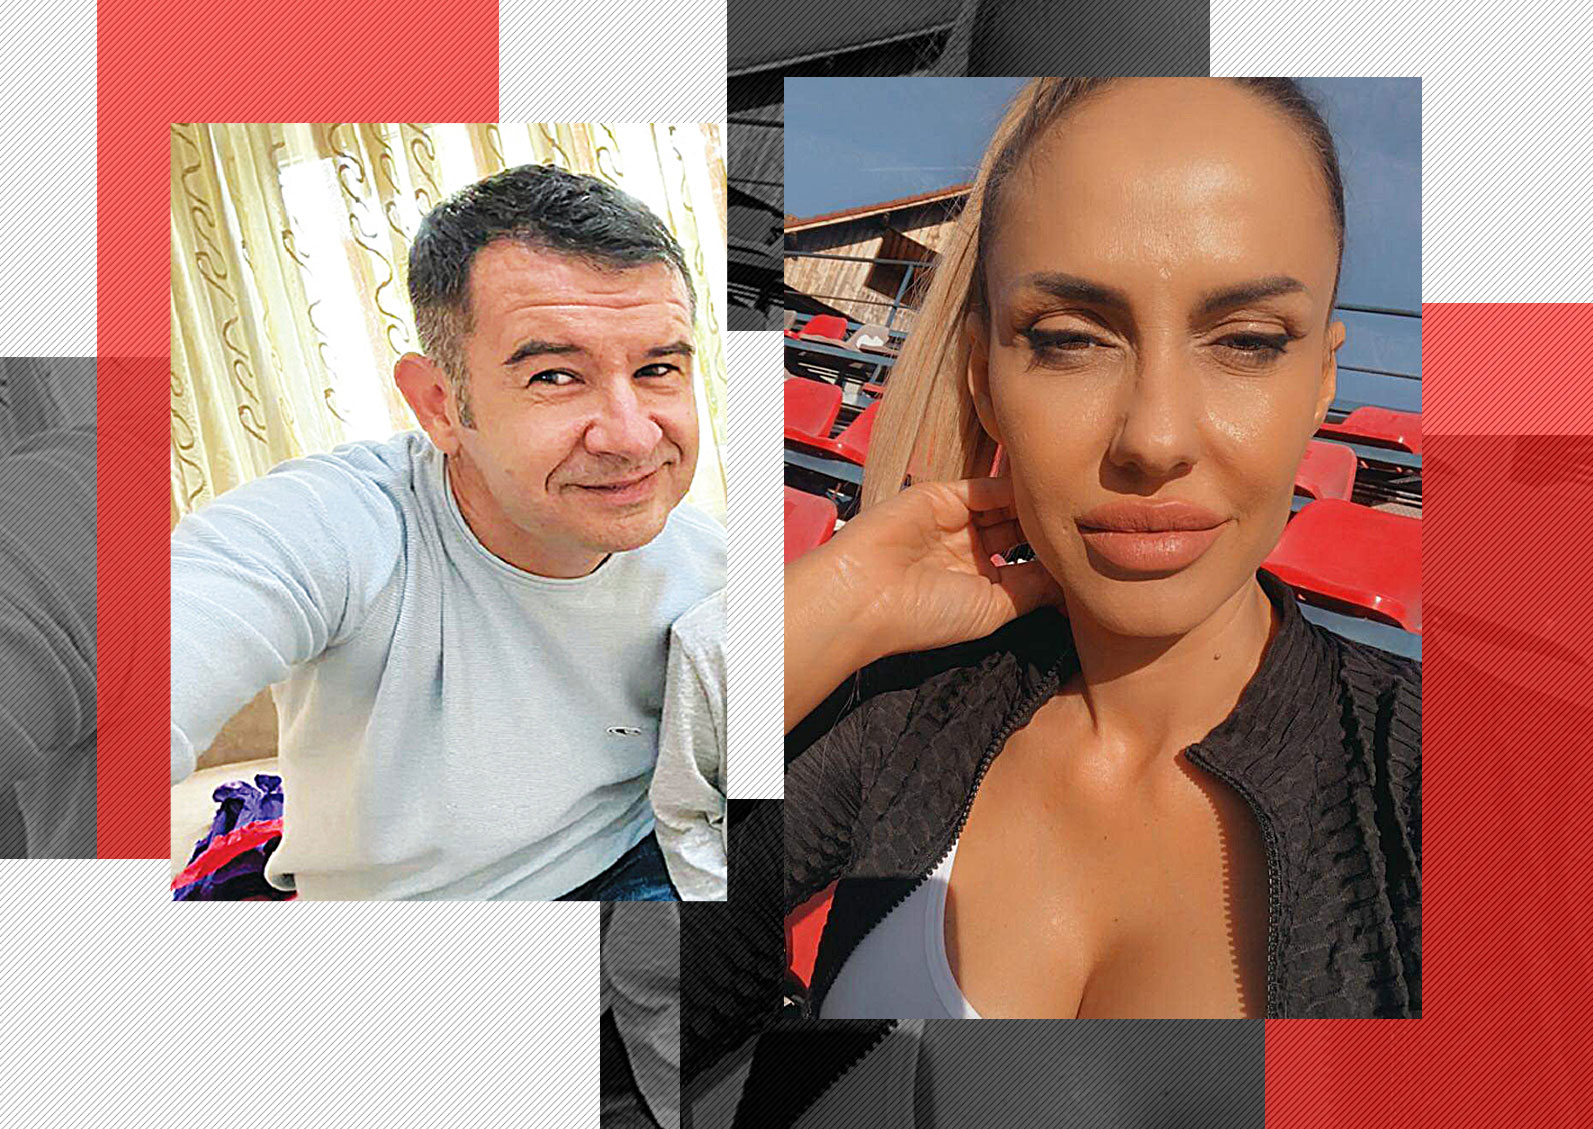 Anița și fostul ei soț, Cristian Cârstoiu, sunt în conflict deschis